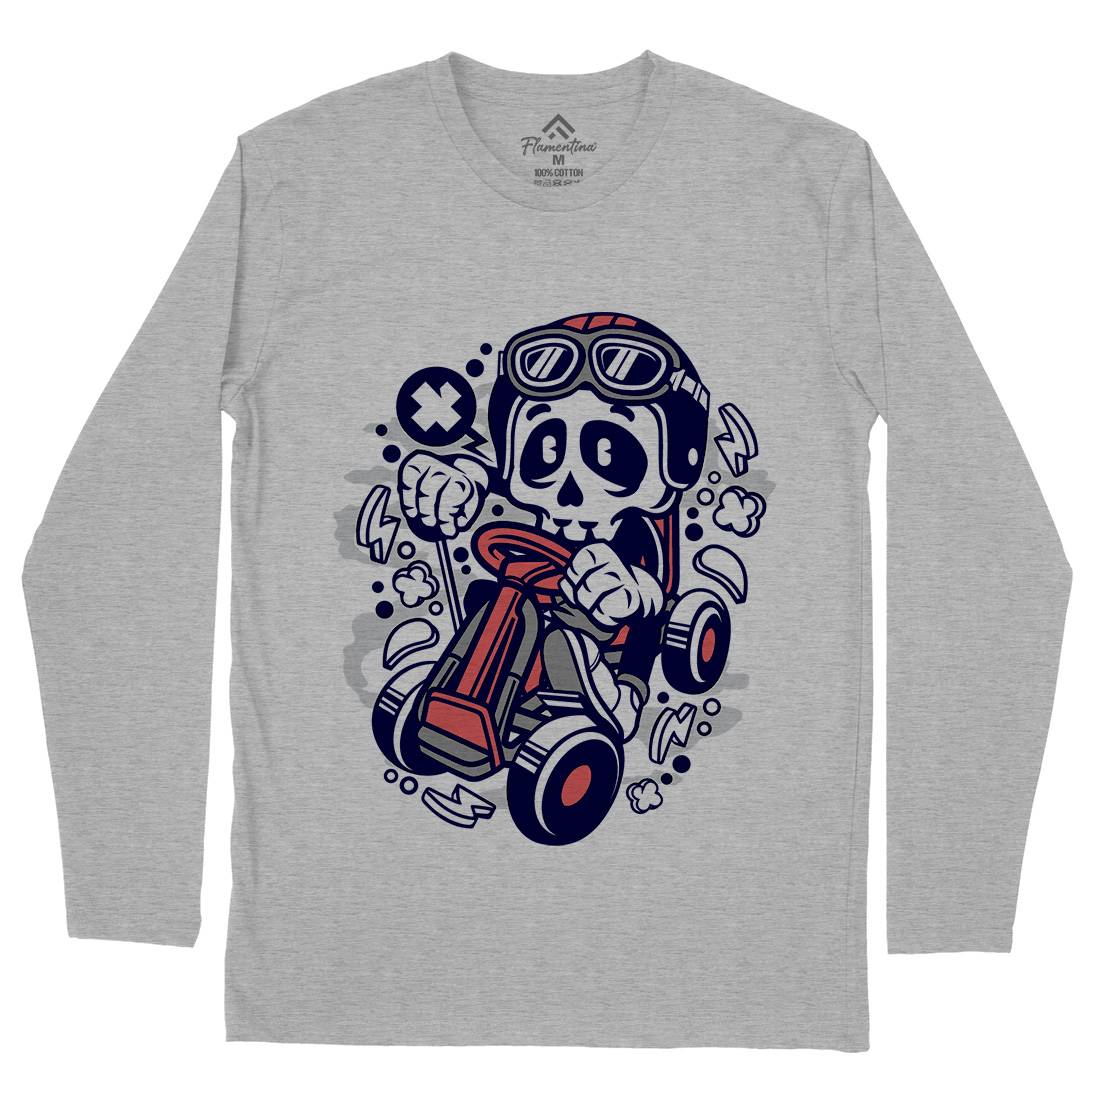 Go-Kart Skull Mens Long Sleeve T-Shirt Sport C124